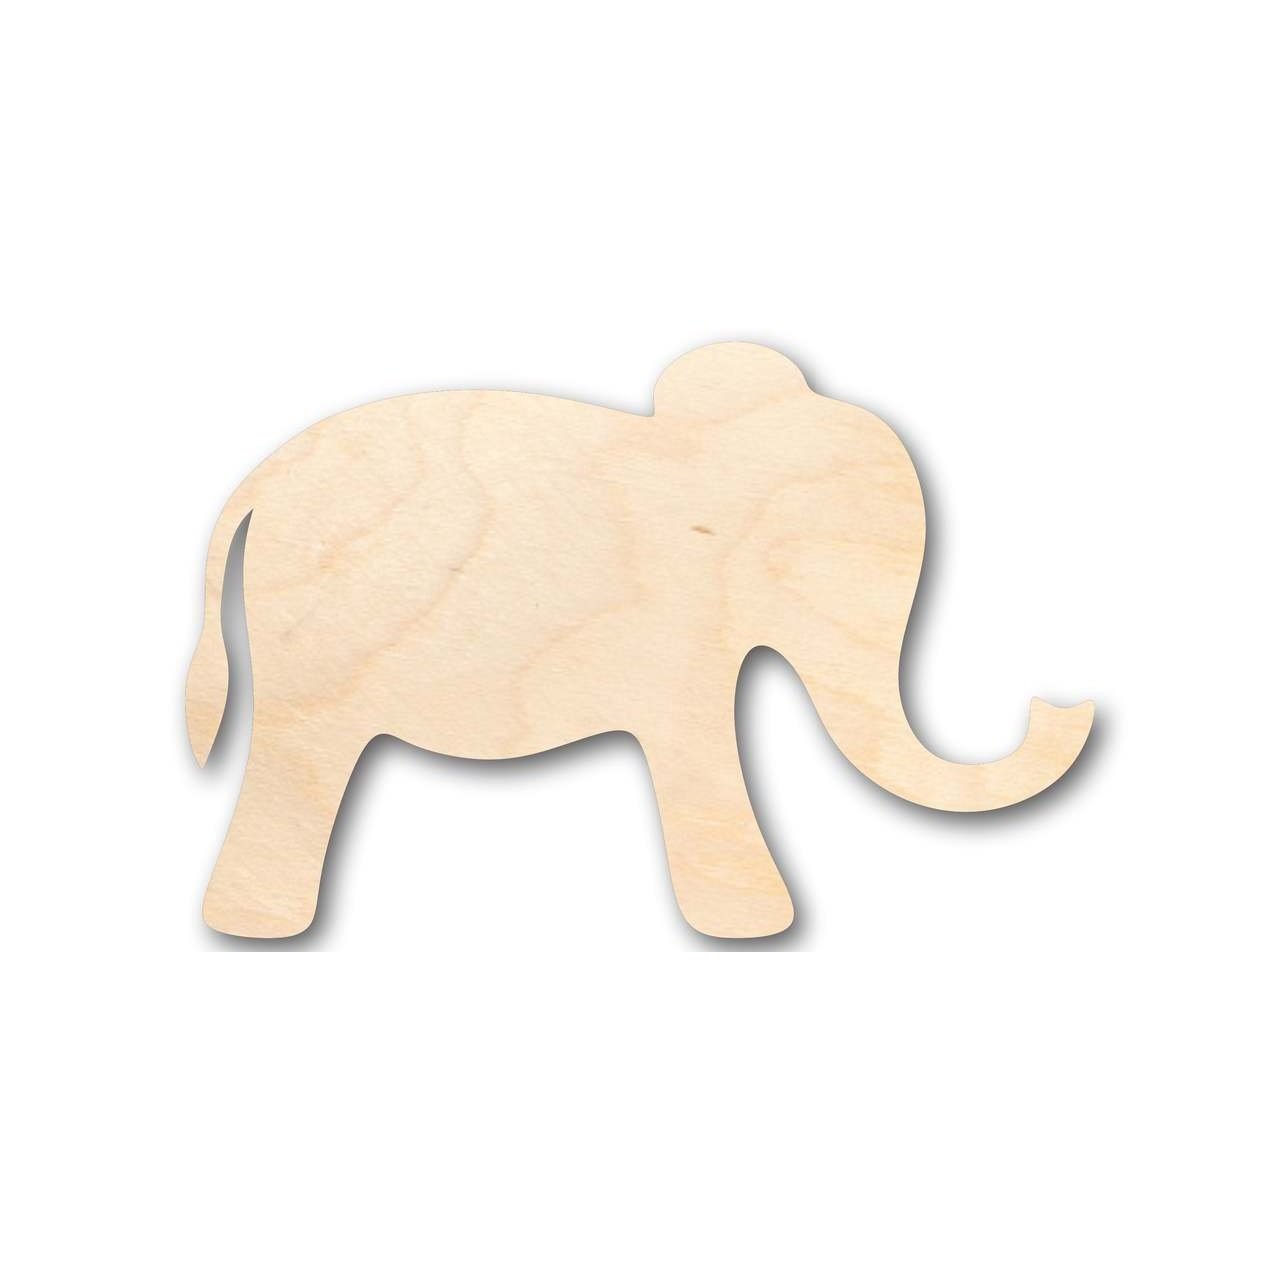 Unfinished Wooden Simple Elephant Shape - Animal - Wildlife - Craft - up to 24